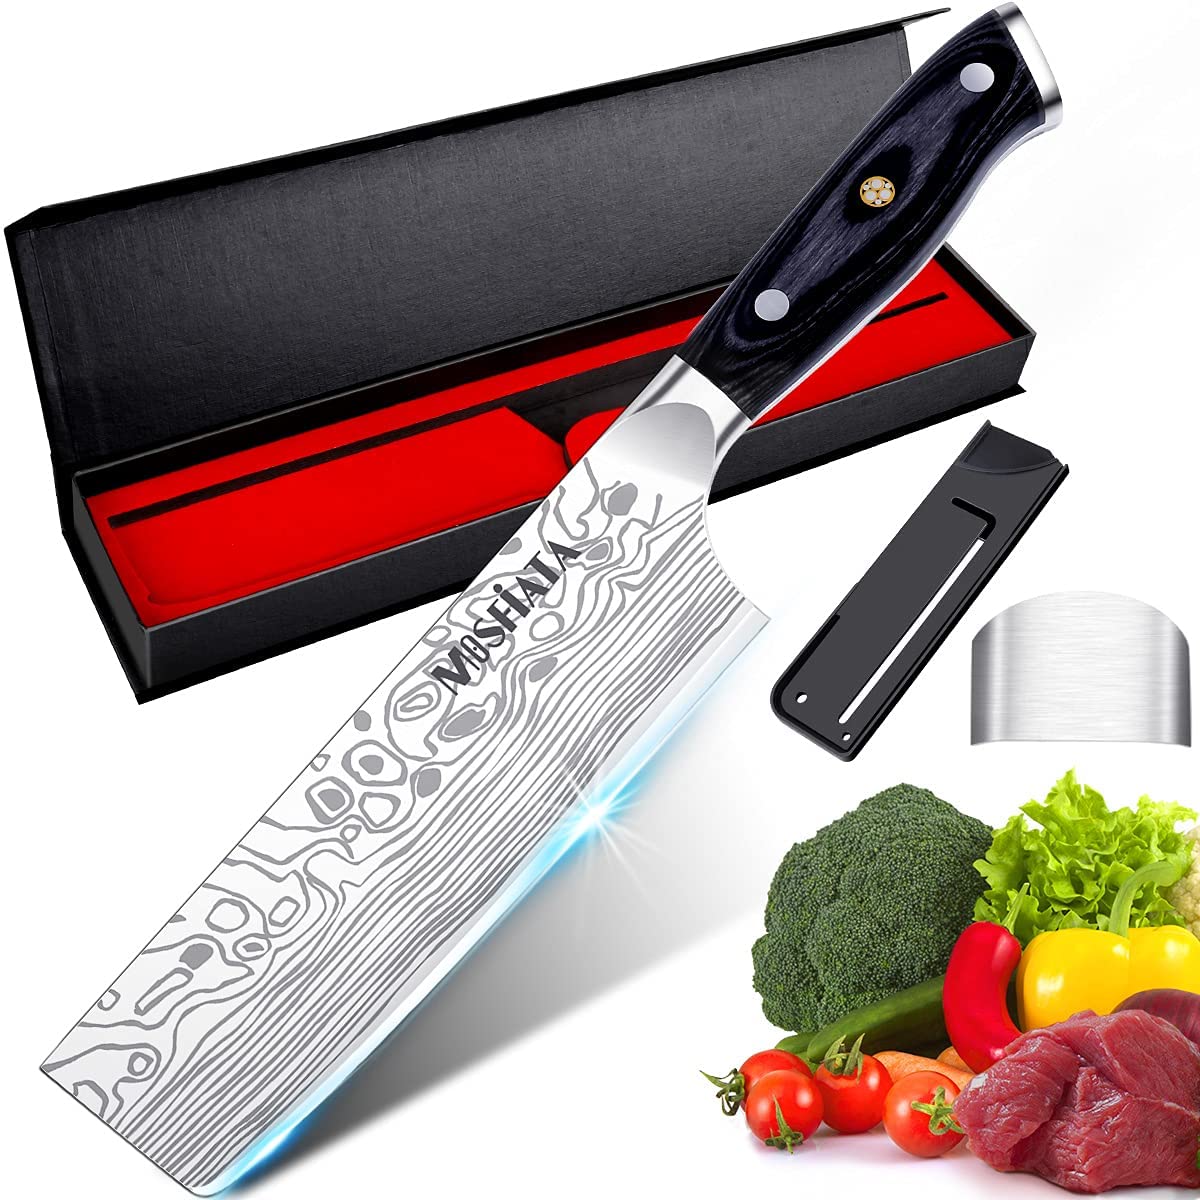 Bästa mångsidiga Nakiri och bästa första japanska kniven- MOSFiATA 7 ”Chef's Knife